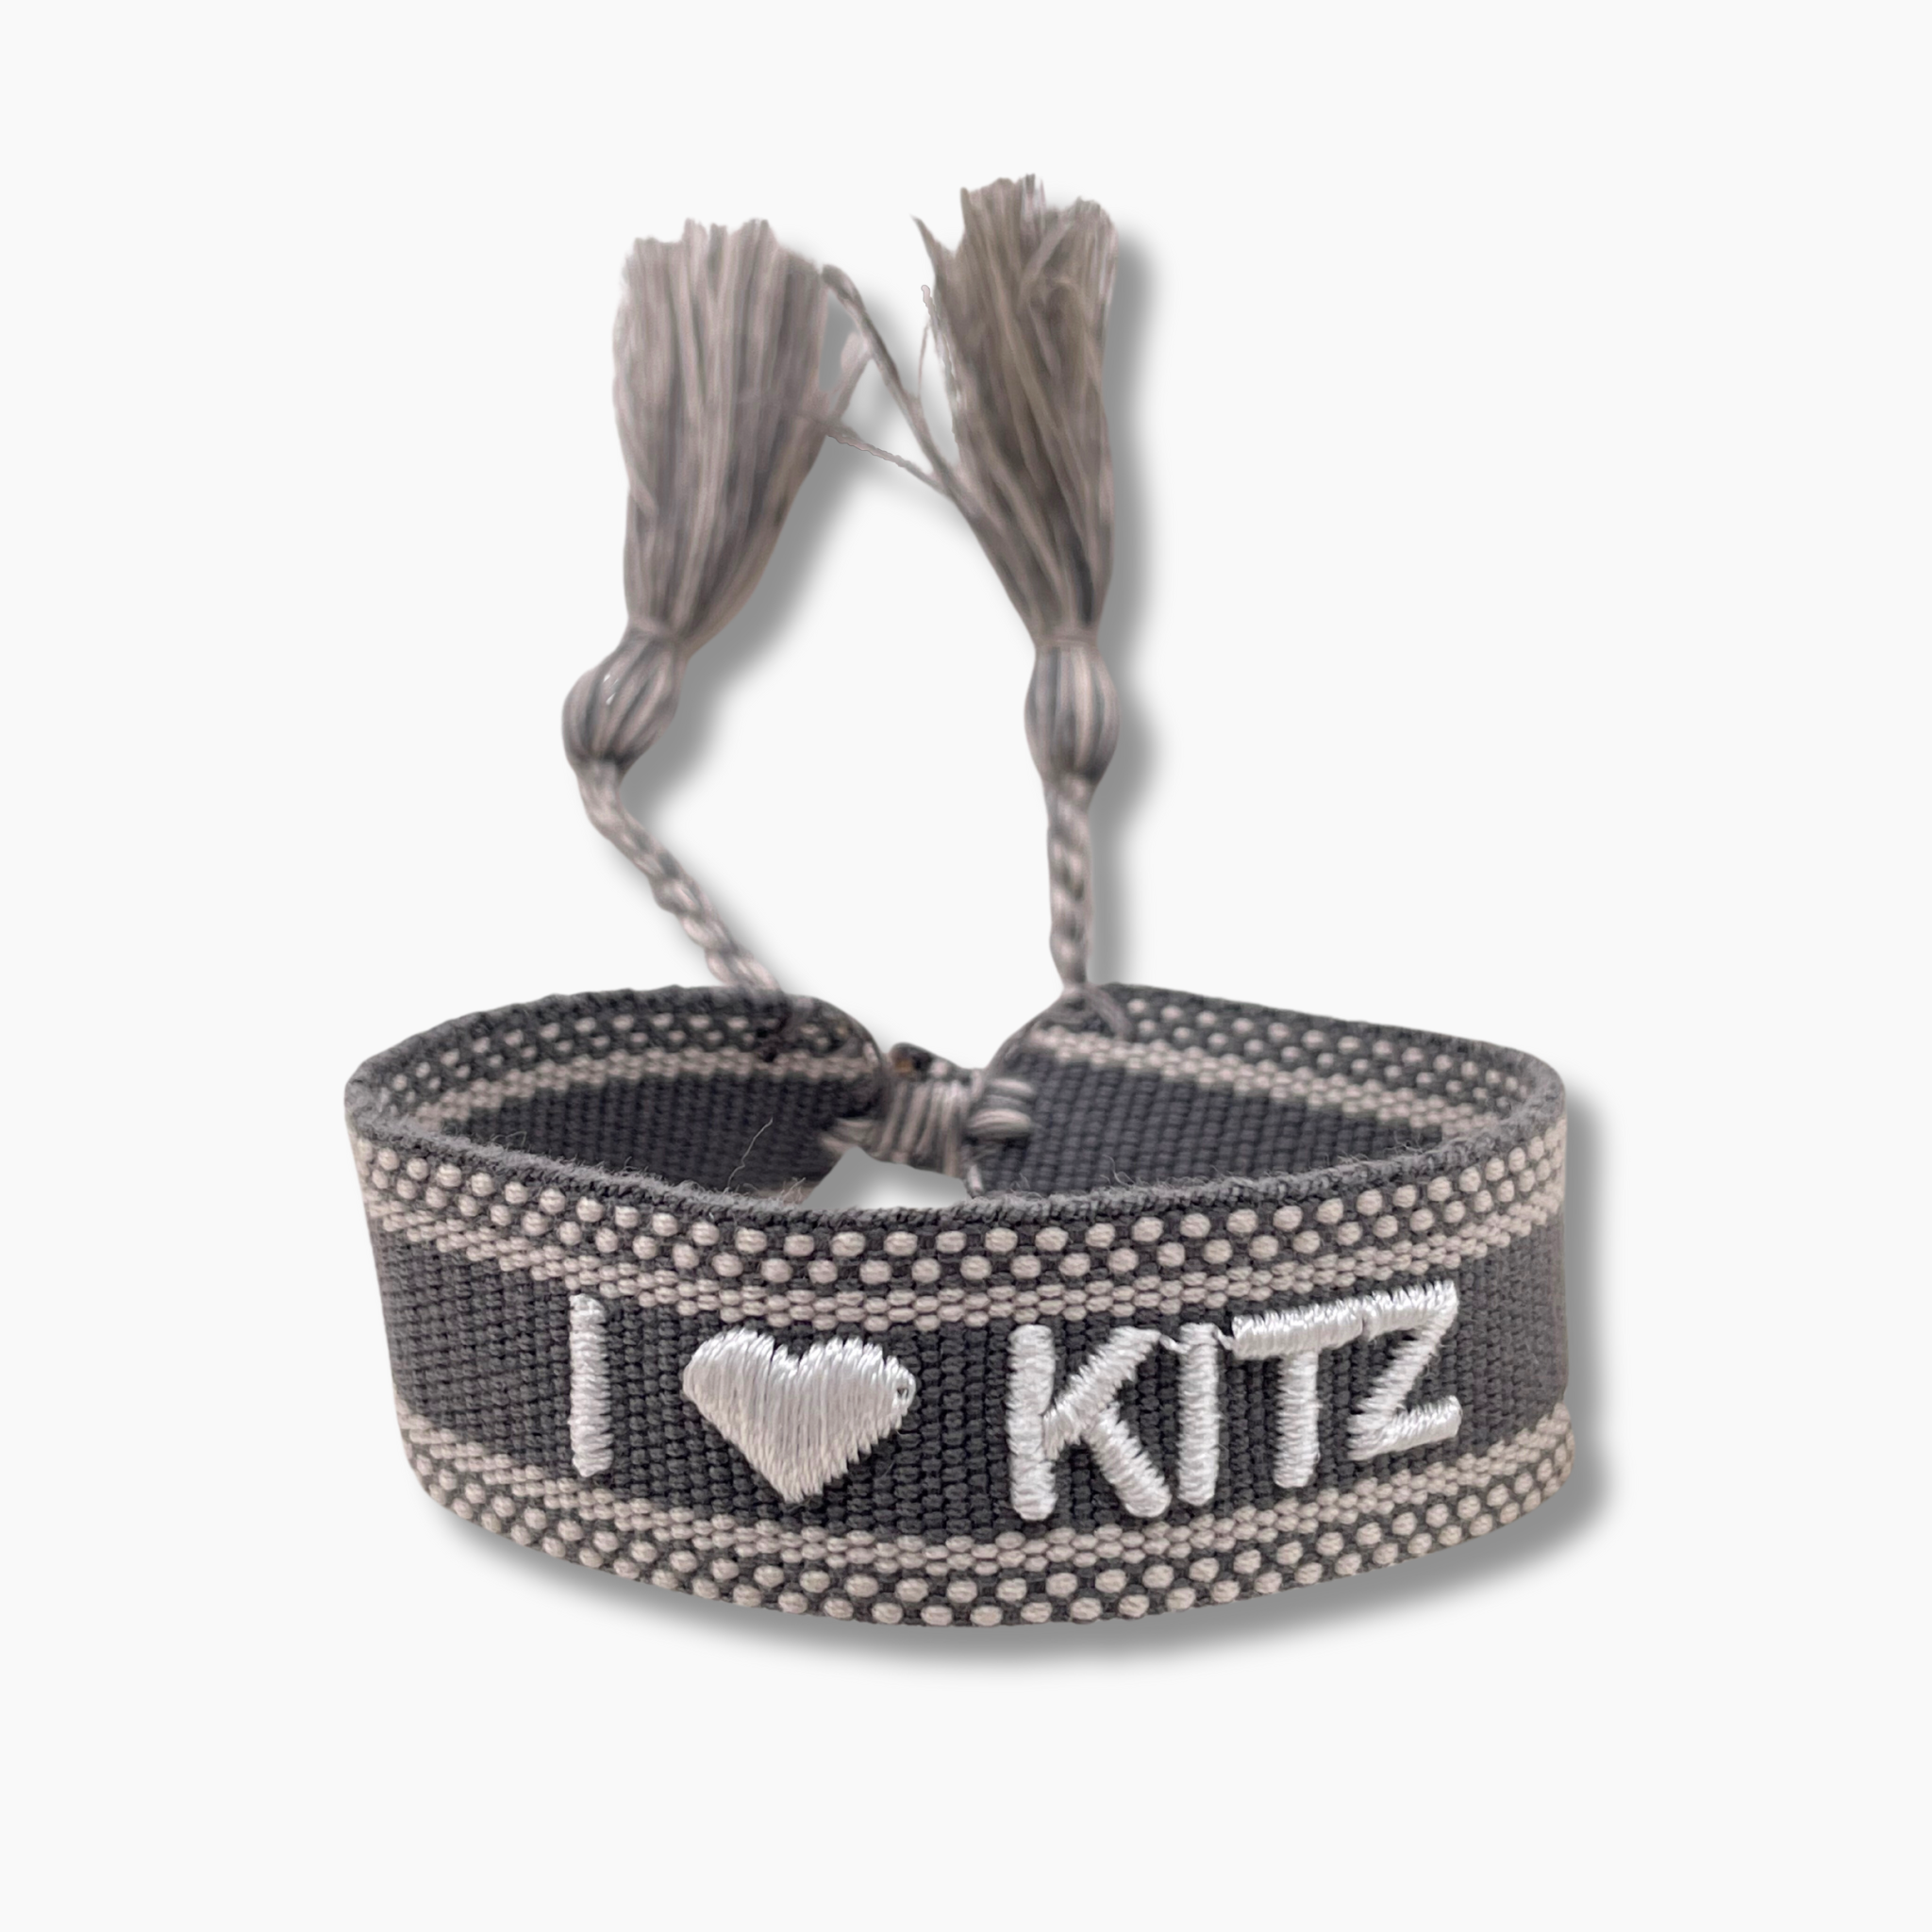 Festival Bracelet I Love Kitz